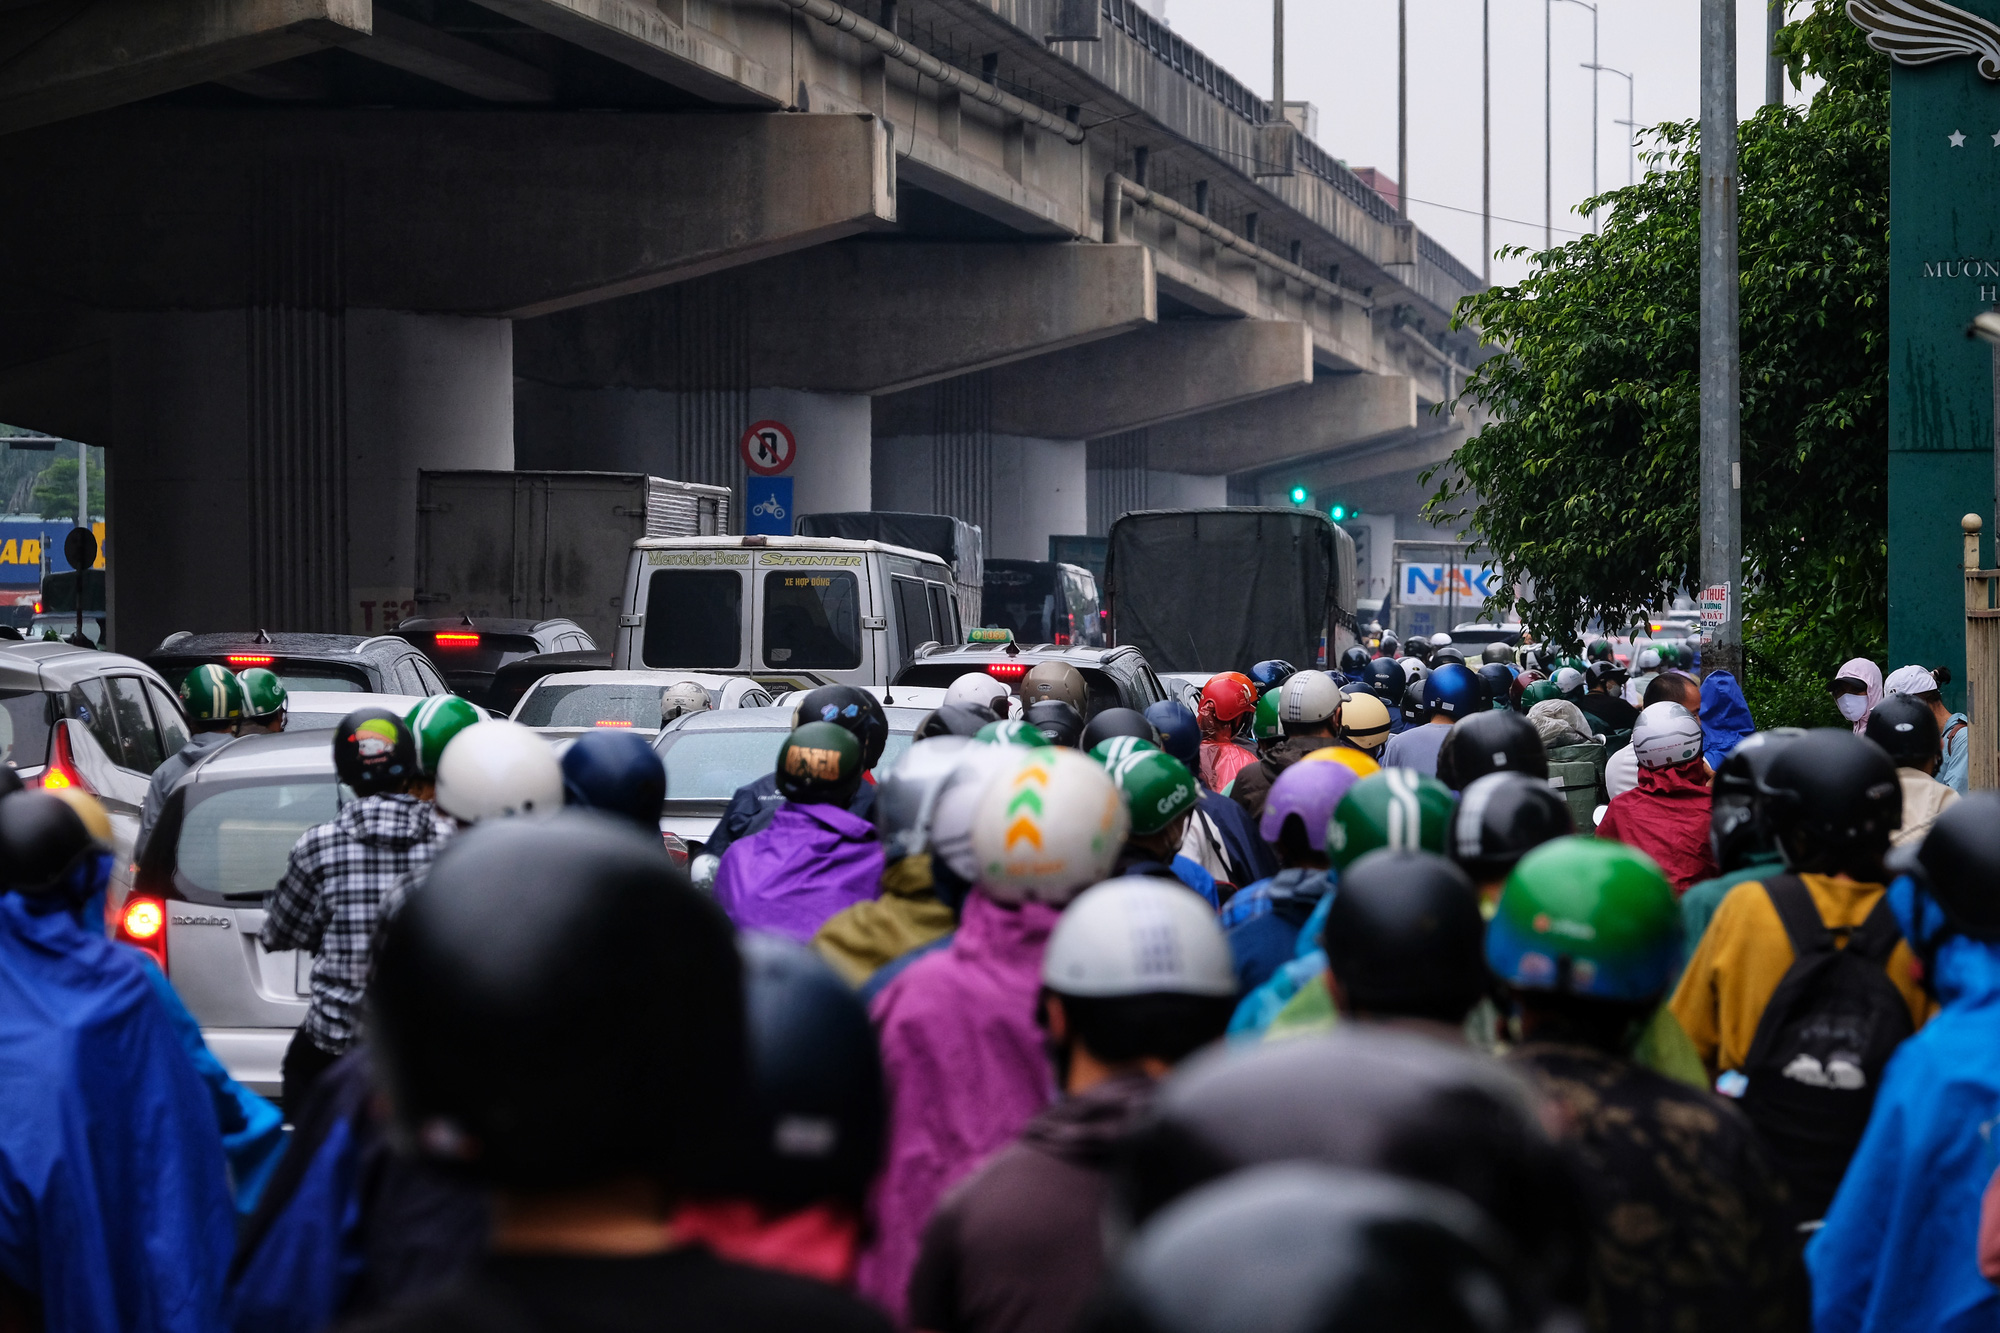 CẤP BÁO: Đường phố Hà Nội đang kẹt cứng, hàng nghìn người về quê nghỉ lễ chôn chân dưới cơn mưa nặng hạt - Ảnh 1.